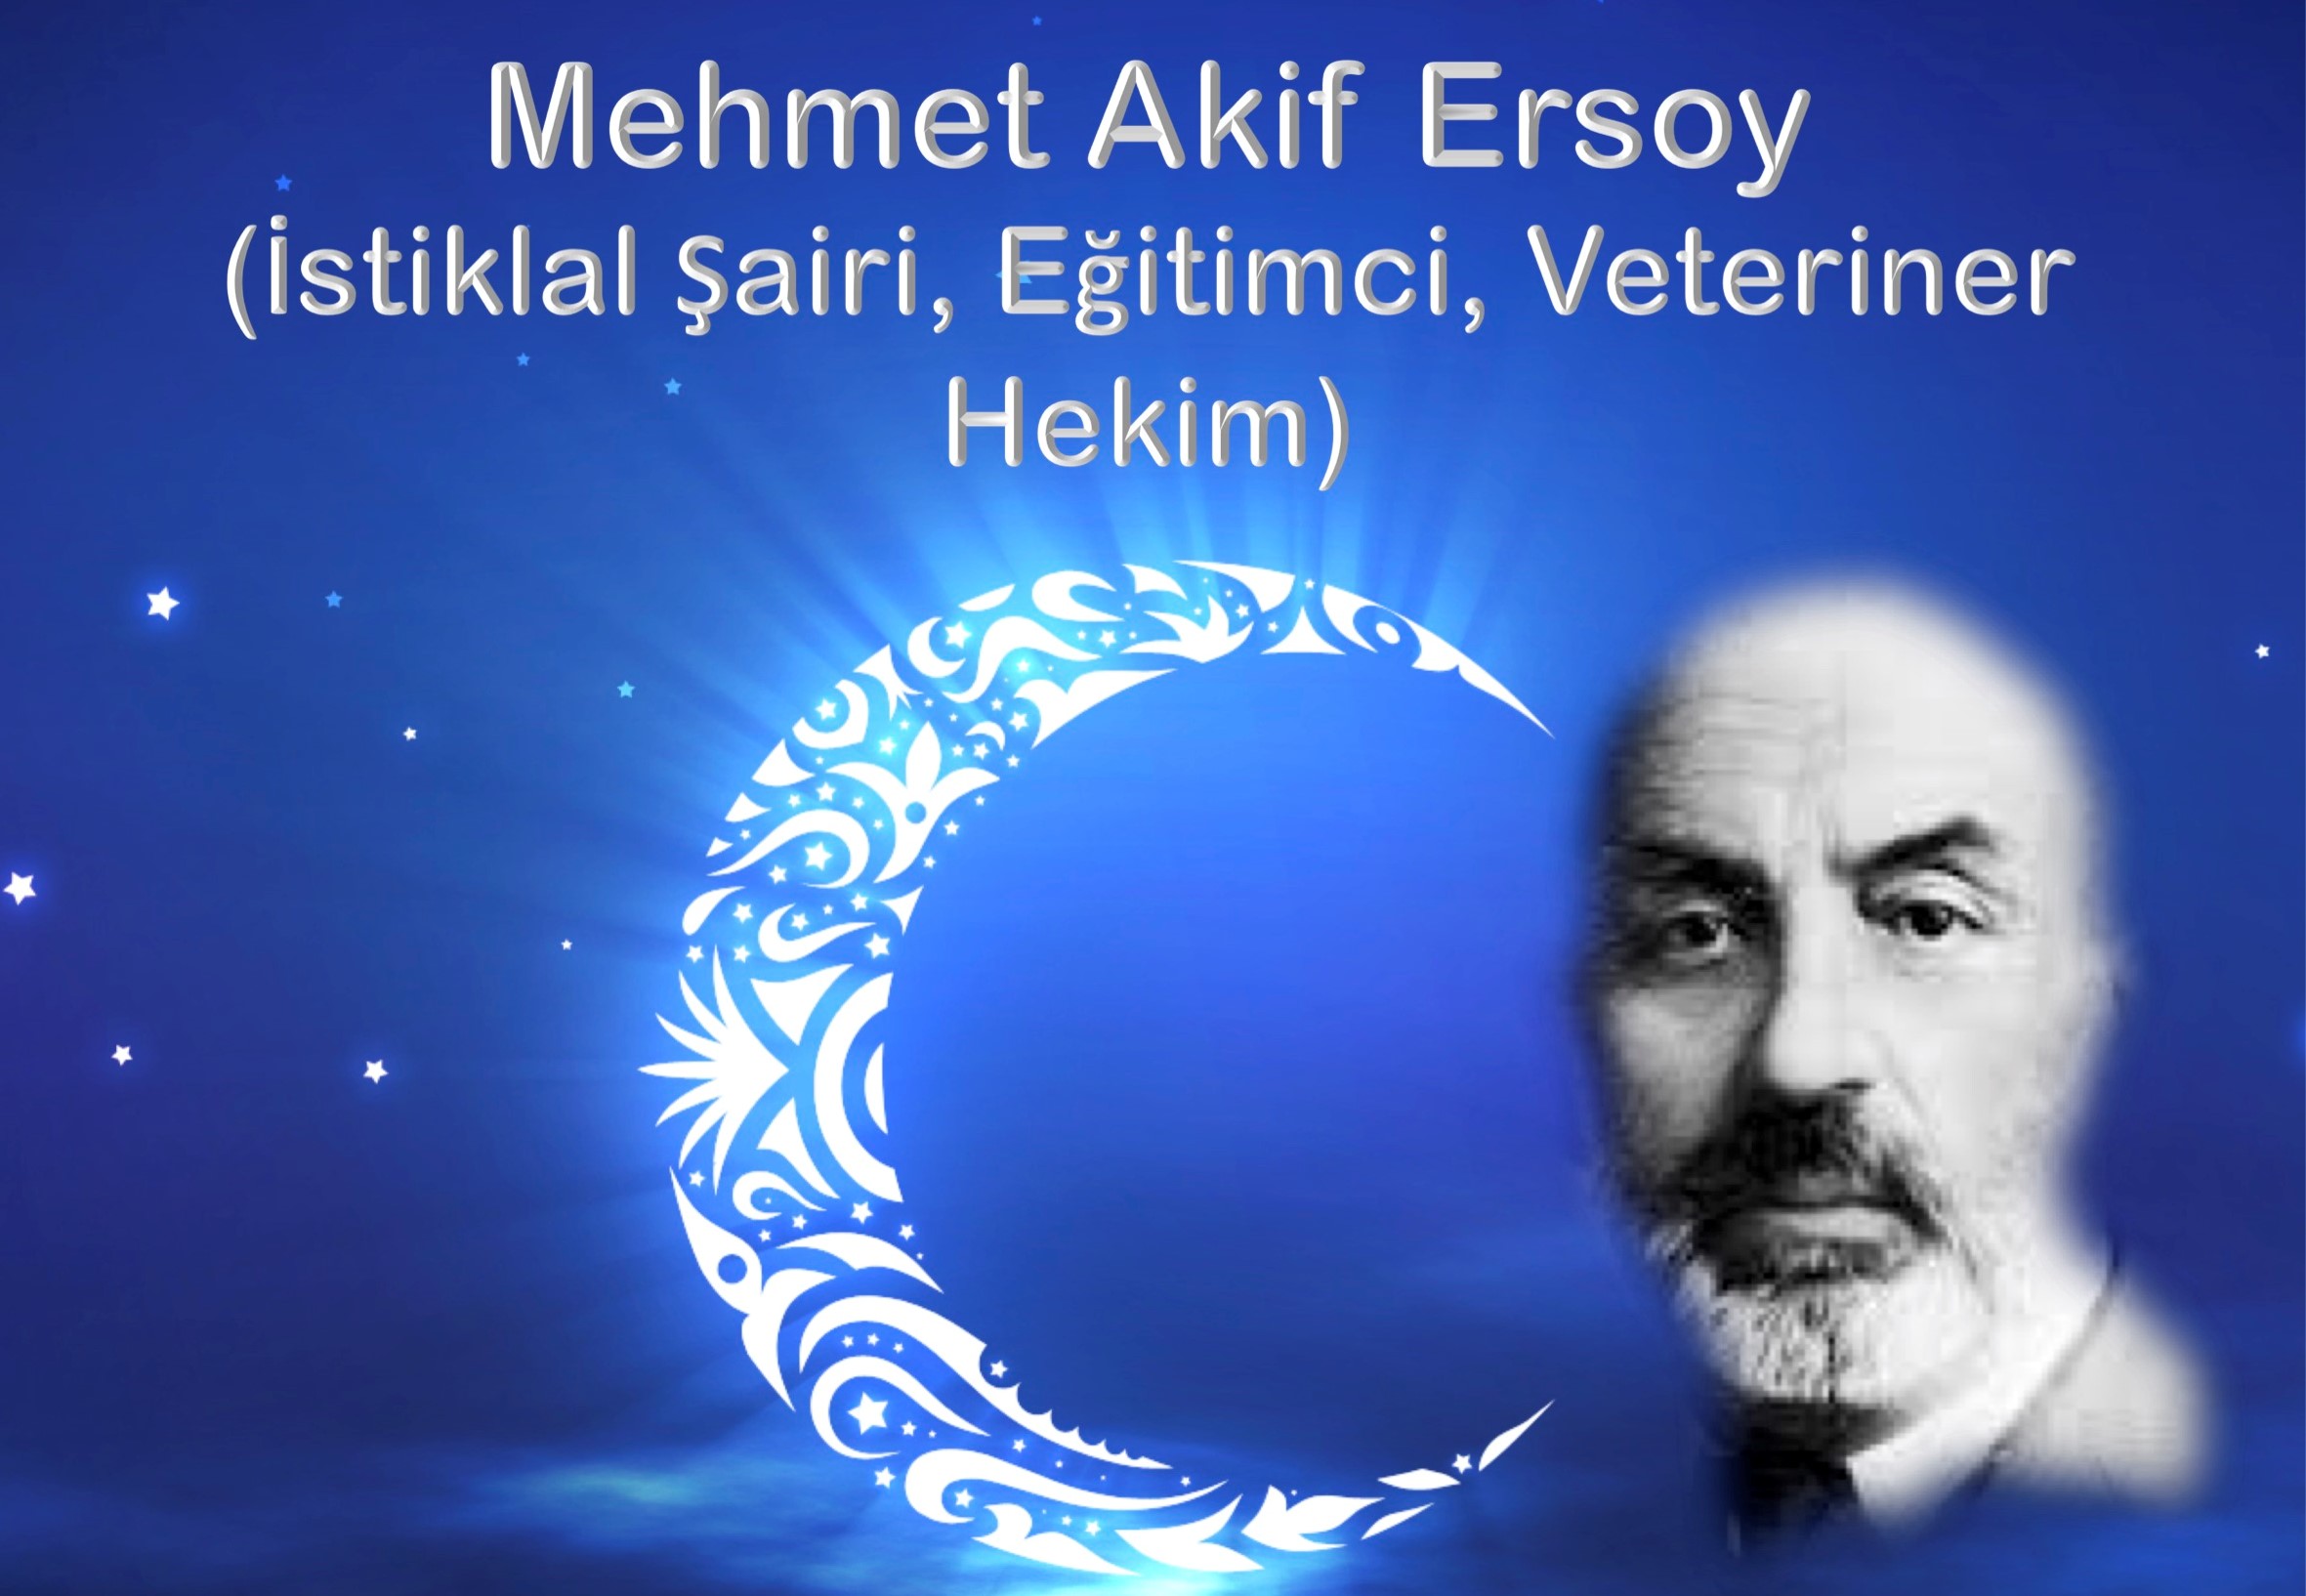 Kırıkkale Üniversitesi'nden Mehmet Âkif Ersoy Konferansı